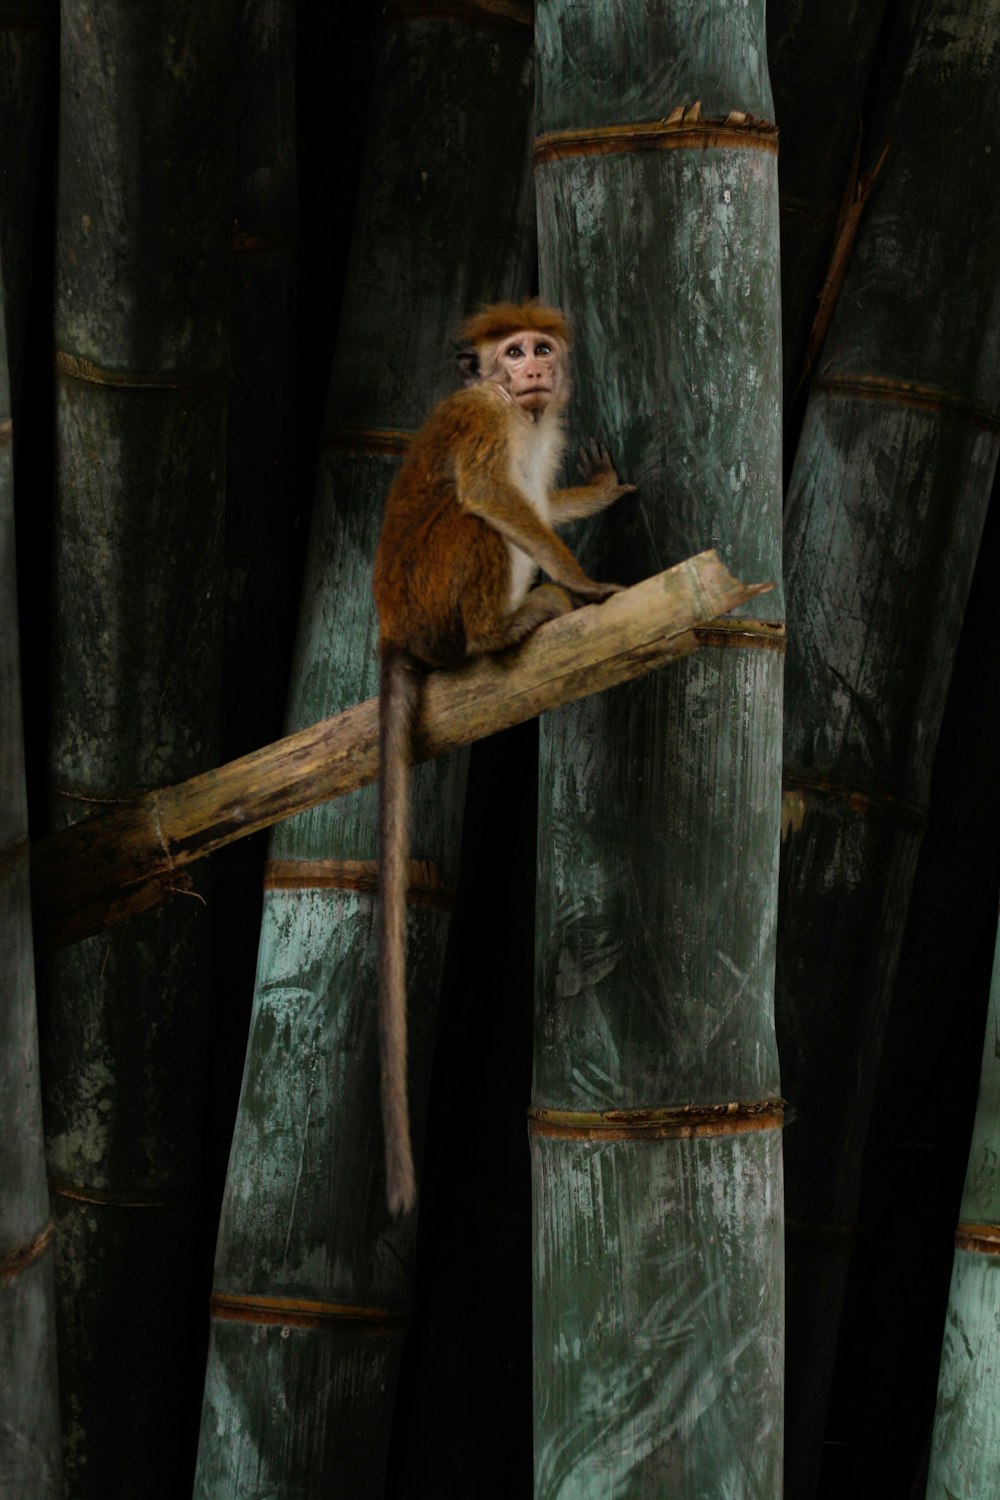 Jogos do macaco com cordas foto de stock. Imagem de bambu - 26182422